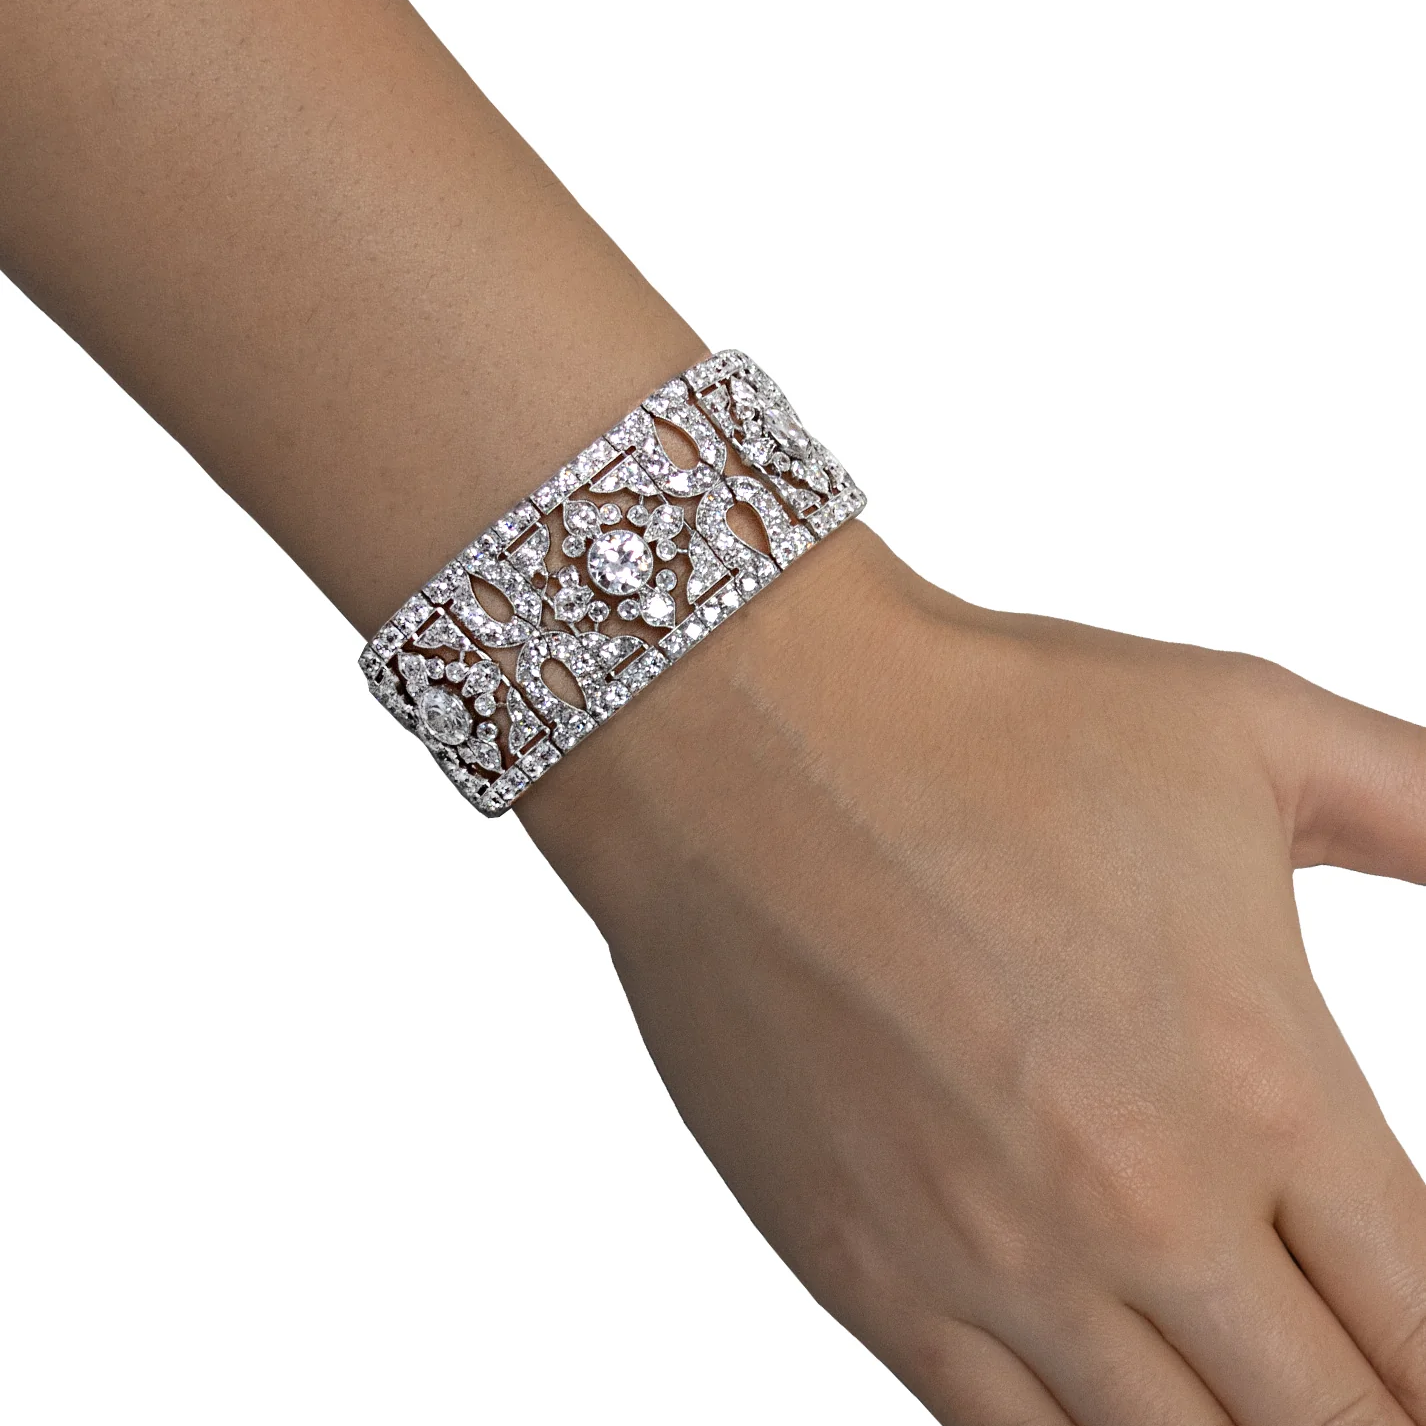 Cartier French Belle Epoque Platinum Diamond Bracelet worn on wrist